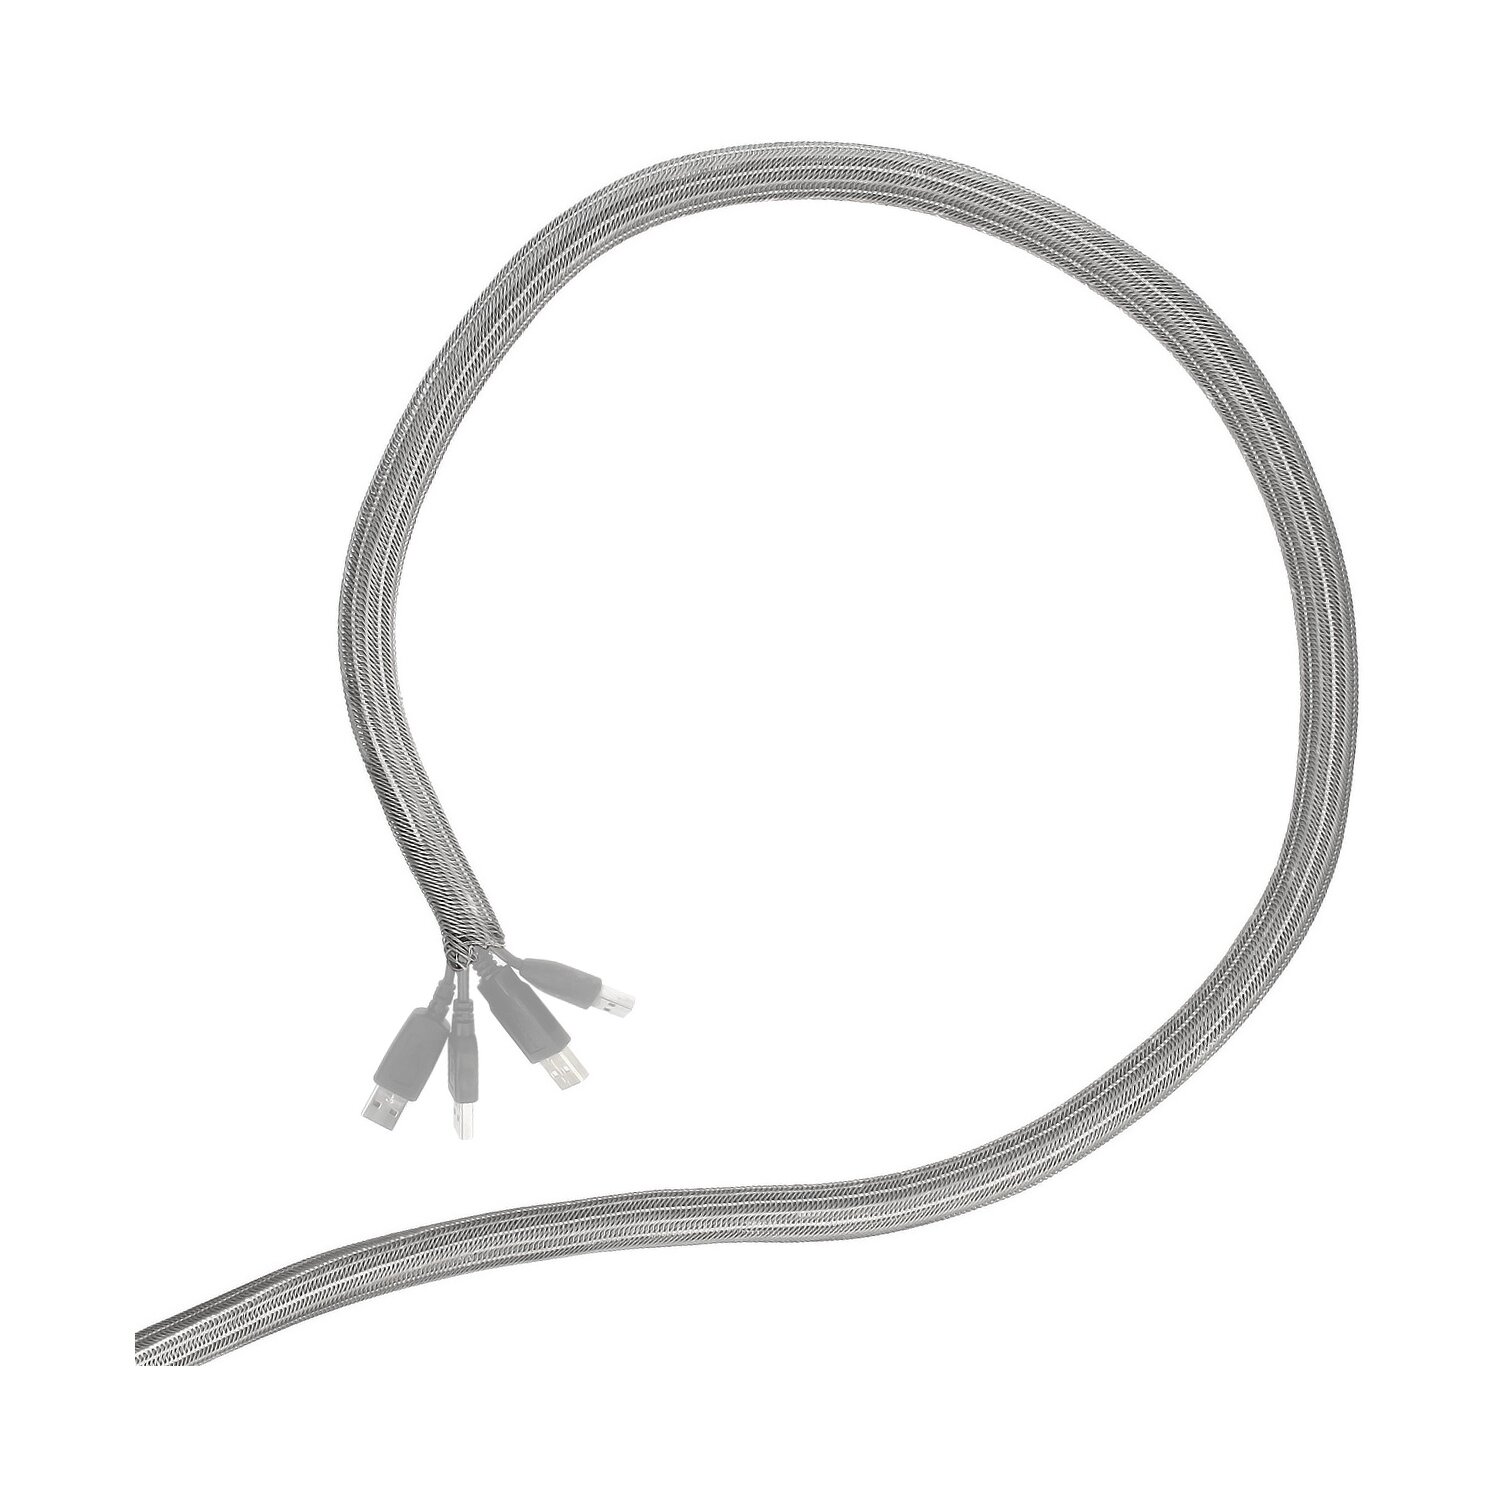 Minadax® gewobener Selbstschließender 5 Meter Profi Kabelschlauch Kabelkanal 16mm Innendurchmesser in grau für flexibles Kabelmanagement